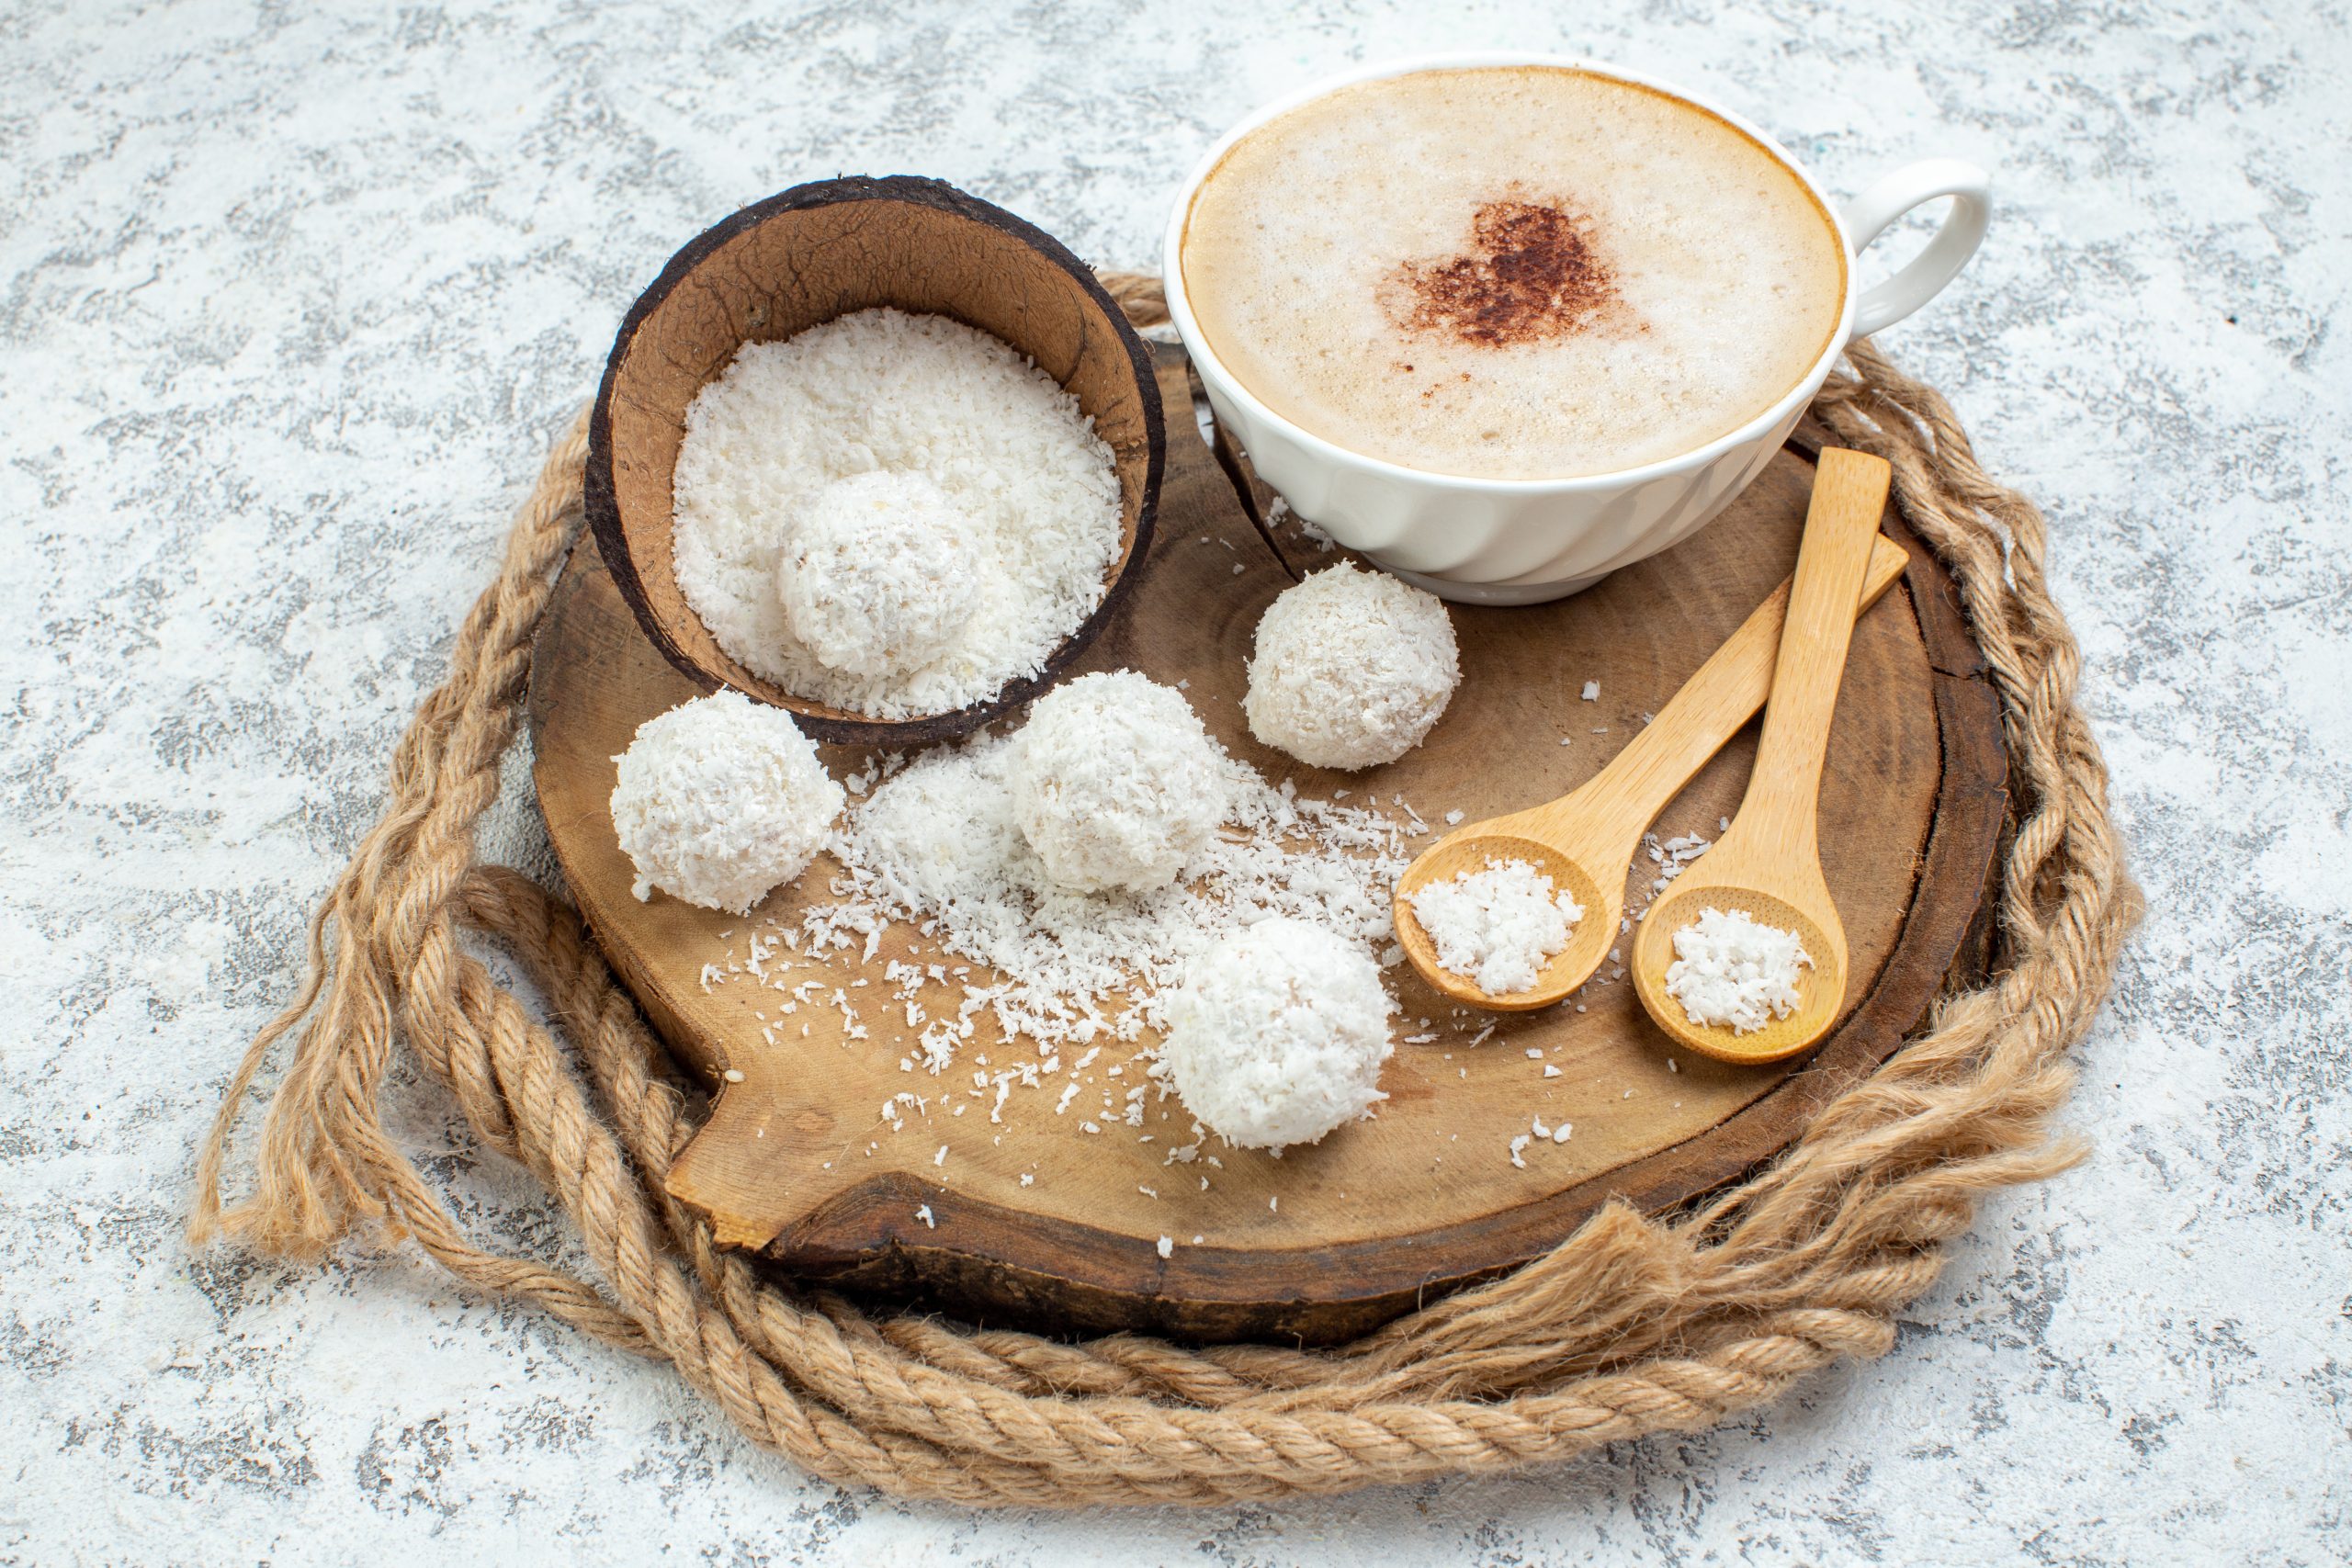 Είναι η Ζάχαρη Καρύδας η Καλύτερη Εναλλακτική Πηγή Ζάχαρης 2  scaled - Ζάχαρη Καρύδας: Είναι η Καλύτερη Εναλλακτική Πηγή Ζάχαρης;